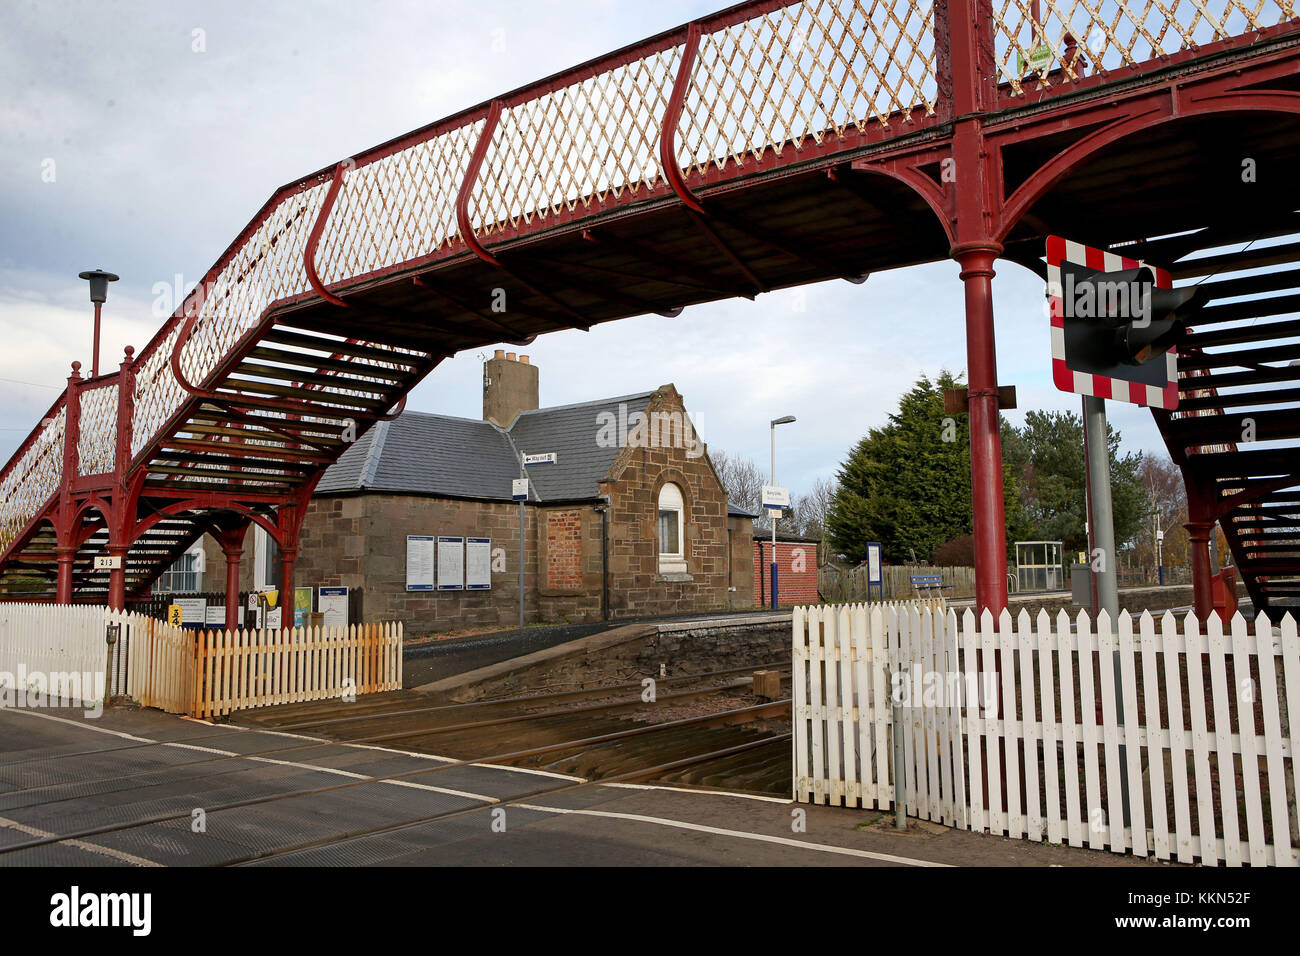 Barry Liens gare près de Carnoustie dans Angus qui a été identifié comme la Grande-Bretagne les moins utilisés station après seulement 24 passagers ont voyagé vers ou à partir de la station en 2016/17, selon les données publiées par le Bureau du rail et de la route. Banque D'Images